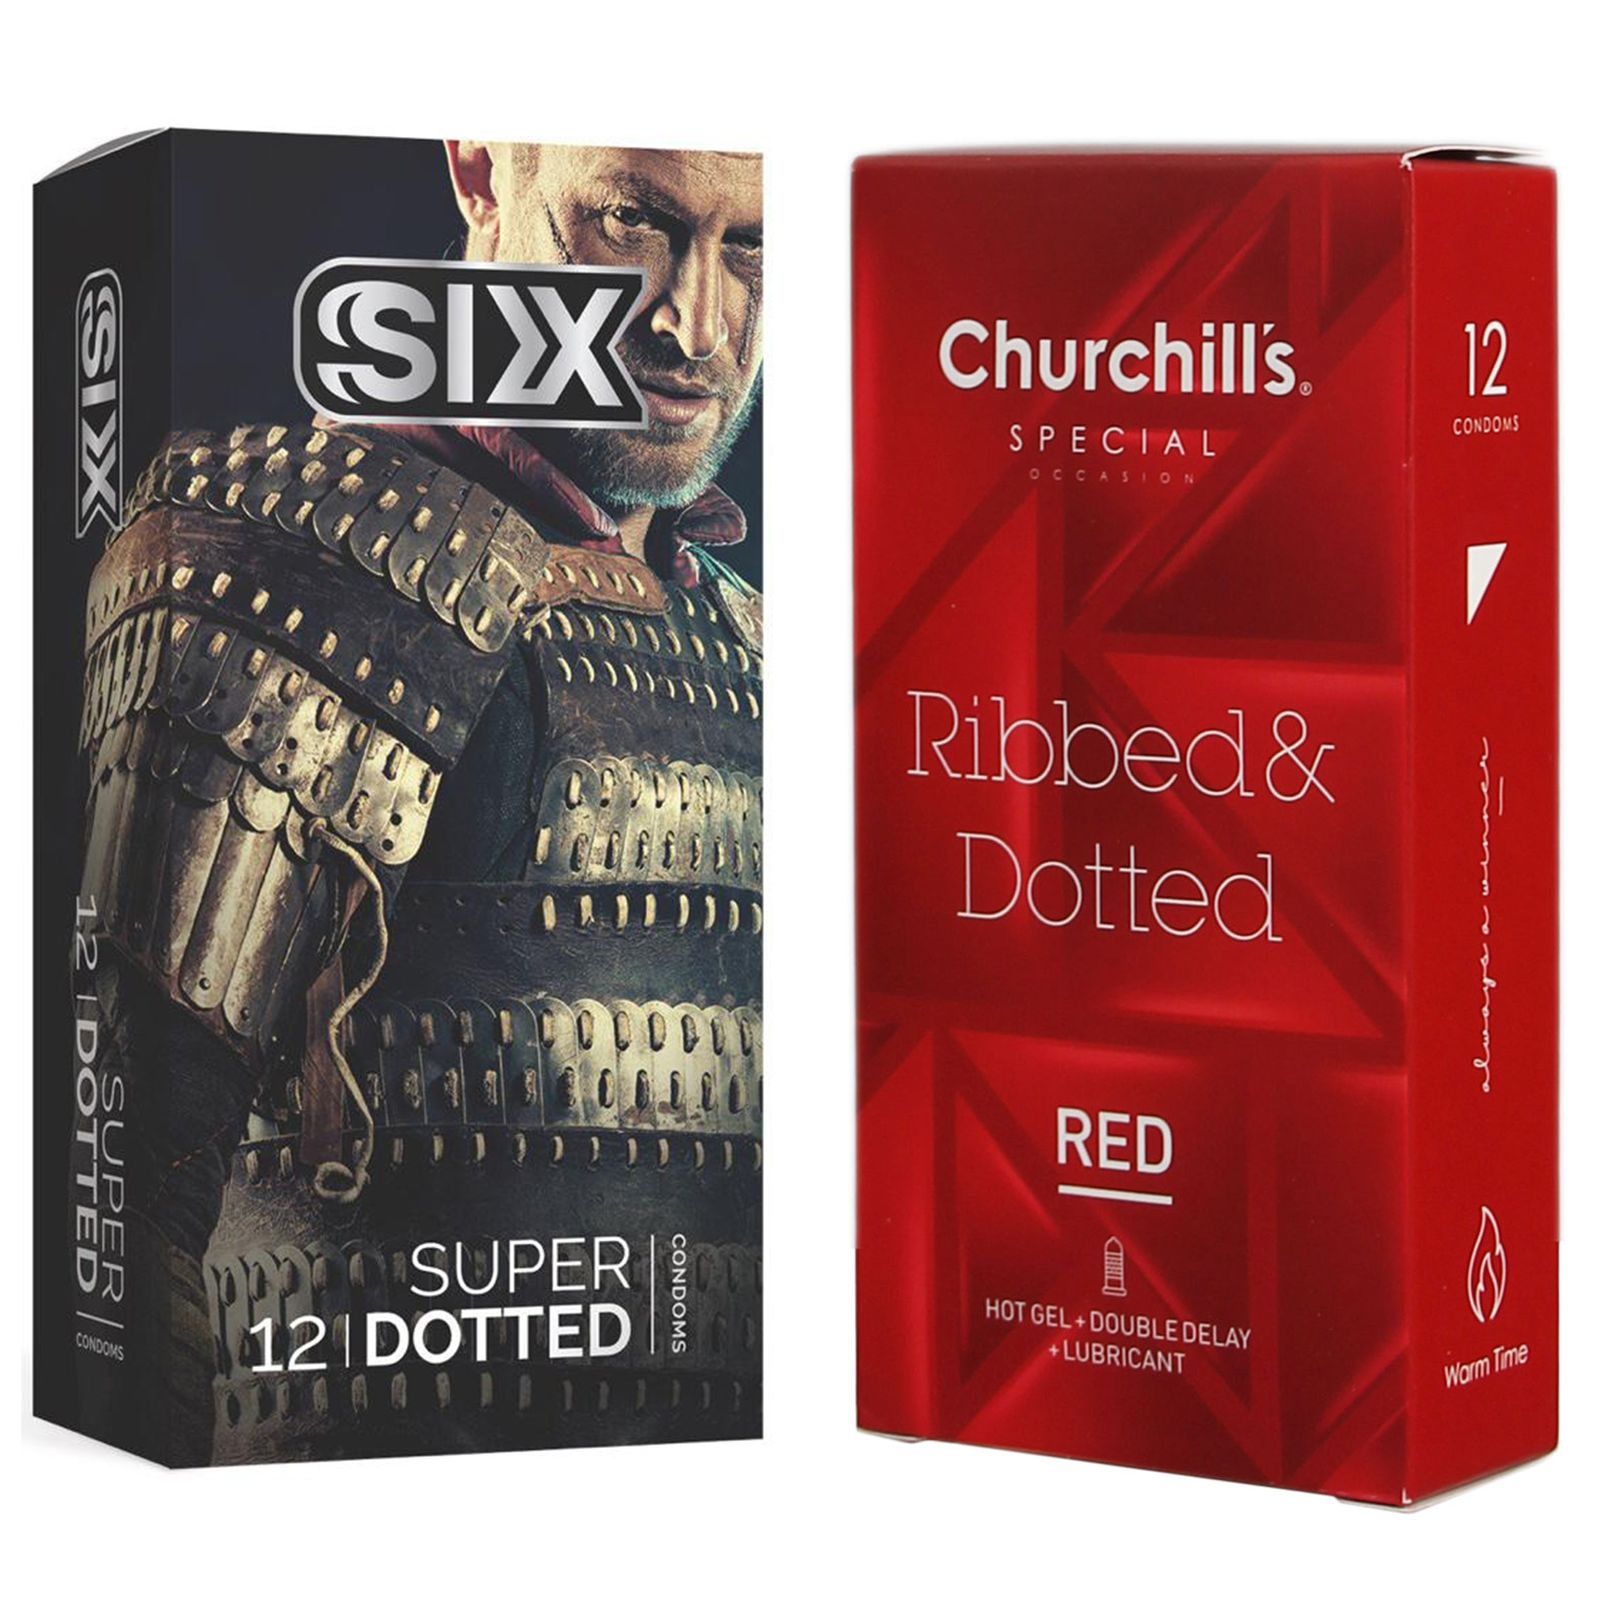 کاندوم چرچیلز مدل Ribbed & Dotted Red بسته 12 عددی به همراه کاندوم سیکس مدل خاردار بسته 12 عددی